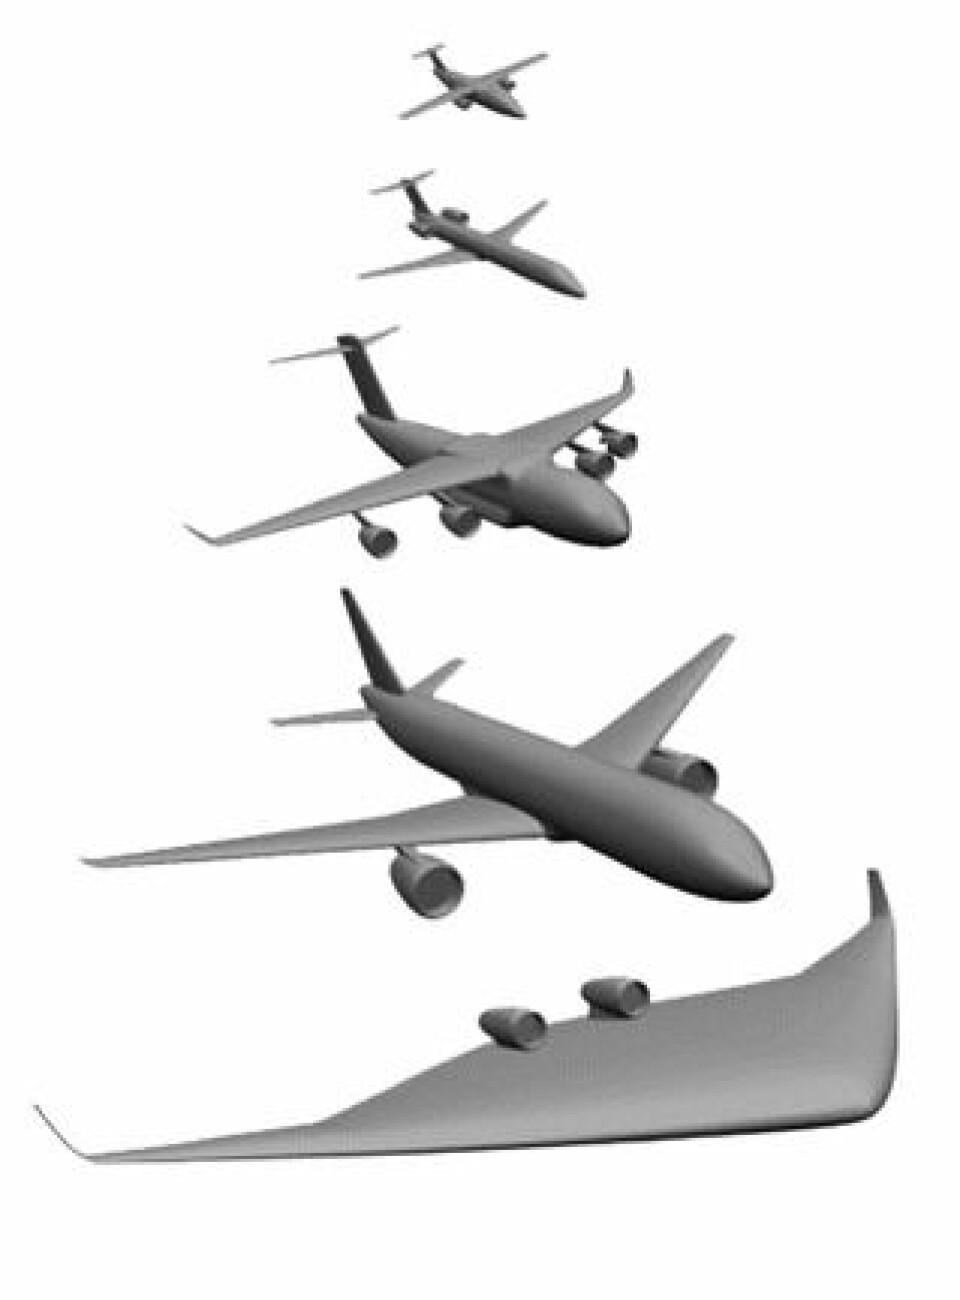 Fem helt olika flygplan kan erhållas ur samma cad-modell genom att parametrarna ändras.